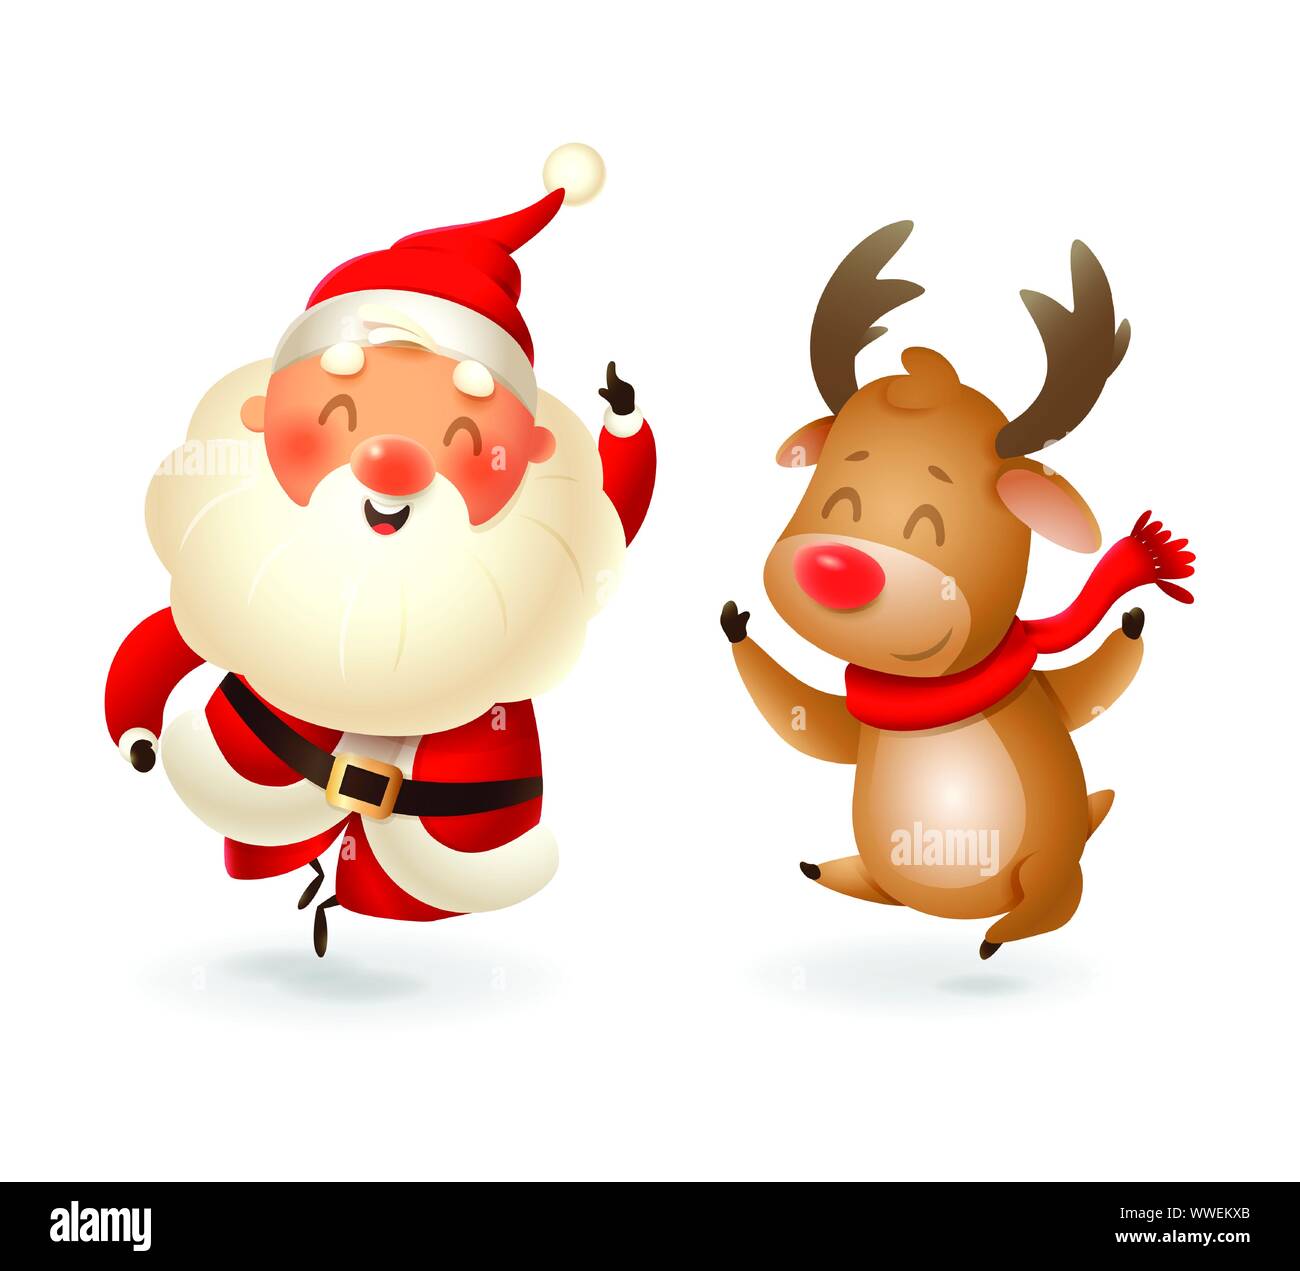 Weihnachtsmann und Rentier - glückliche Ausdruck-Finger-Vector Illustration auf transparentem Hintergrund isoliert Stock Vektor